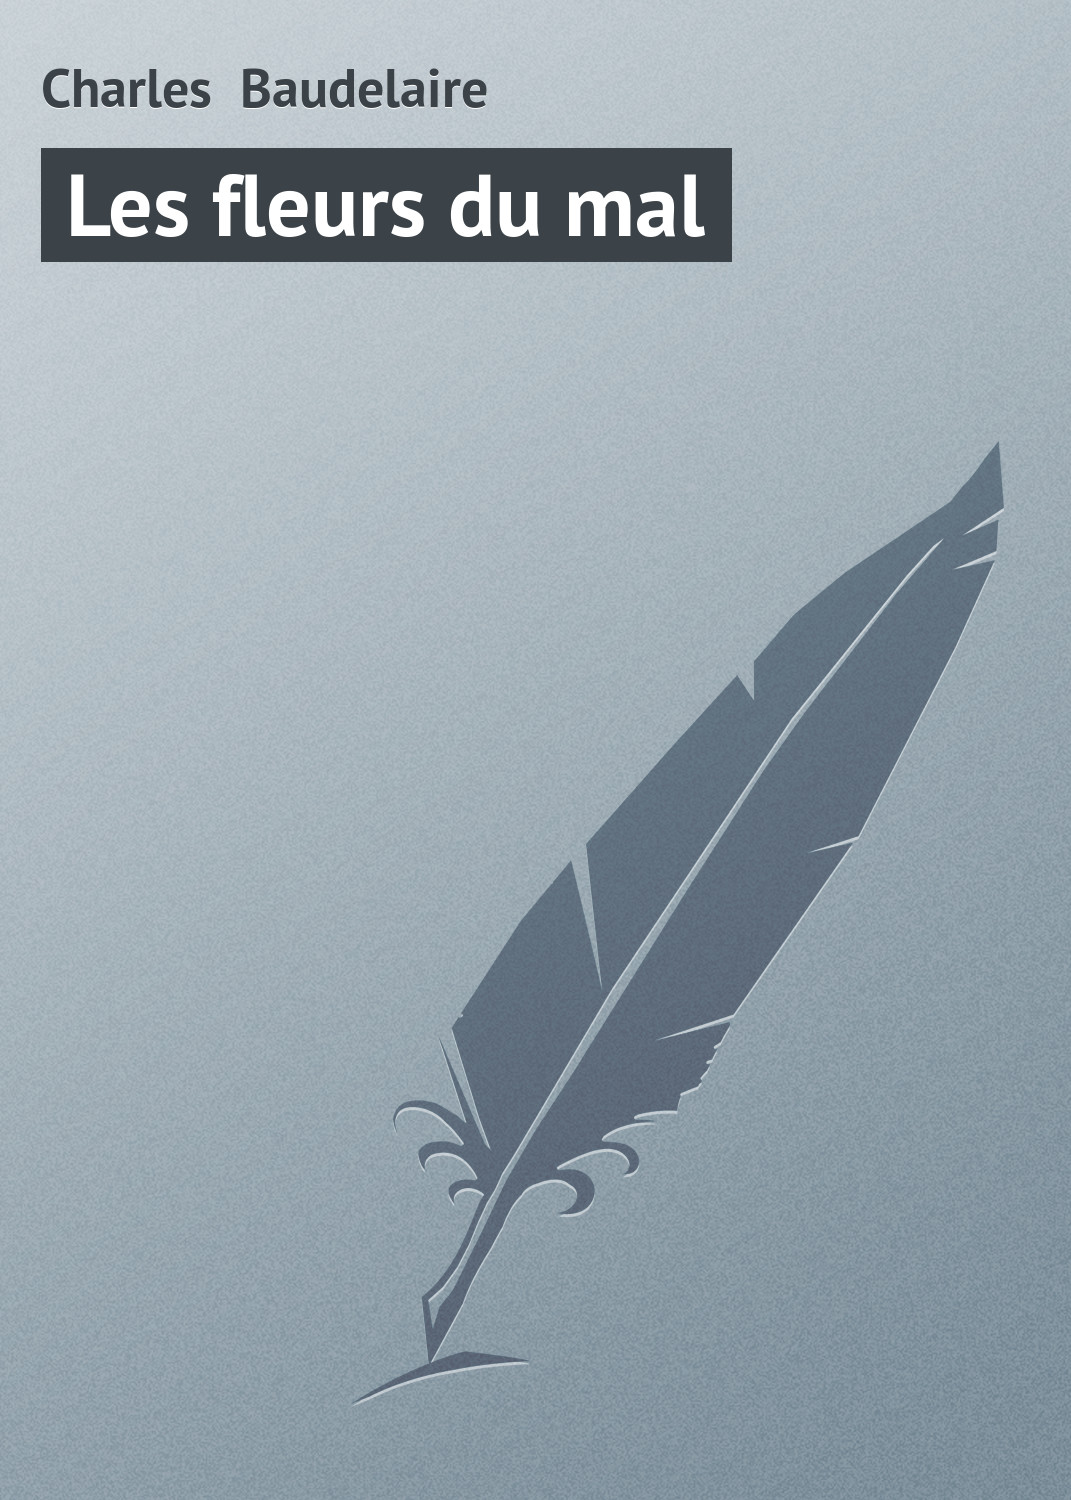 Книга Les fleurs du mal из серии , созданная Charles Baudelaire, может относится к жанру Зарубежная старинная литература, Зарубежная классика. Стоимость электронной книги Les fleurs du mal с идентификатором 21104430 составляет 5.99 руб.